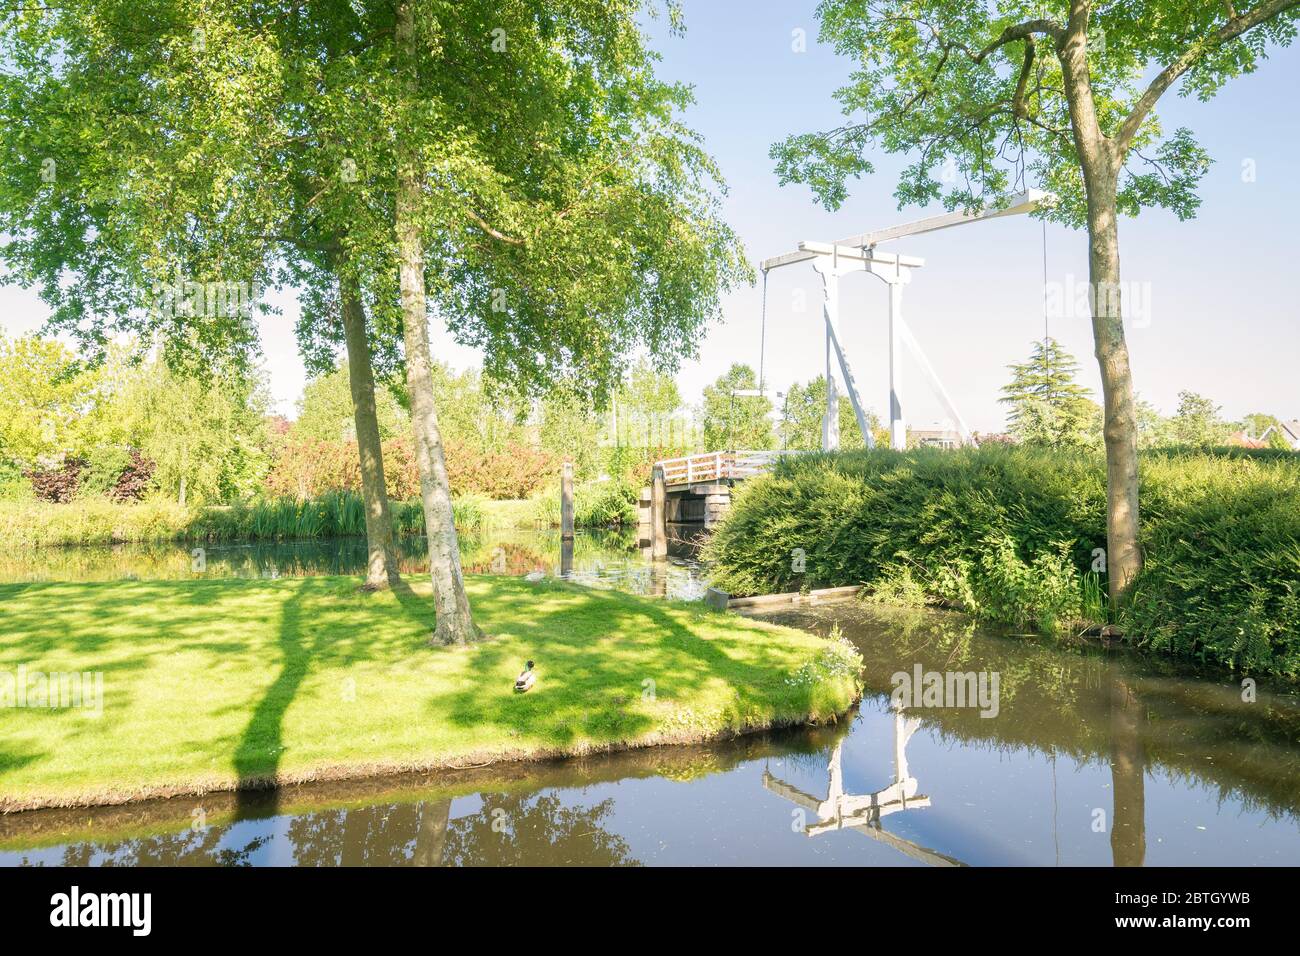 Hermosa vista de un puente levadizo holandés tradicional en un parque en el pueblo de Zevenhuizen, países Bajos Foto de stock